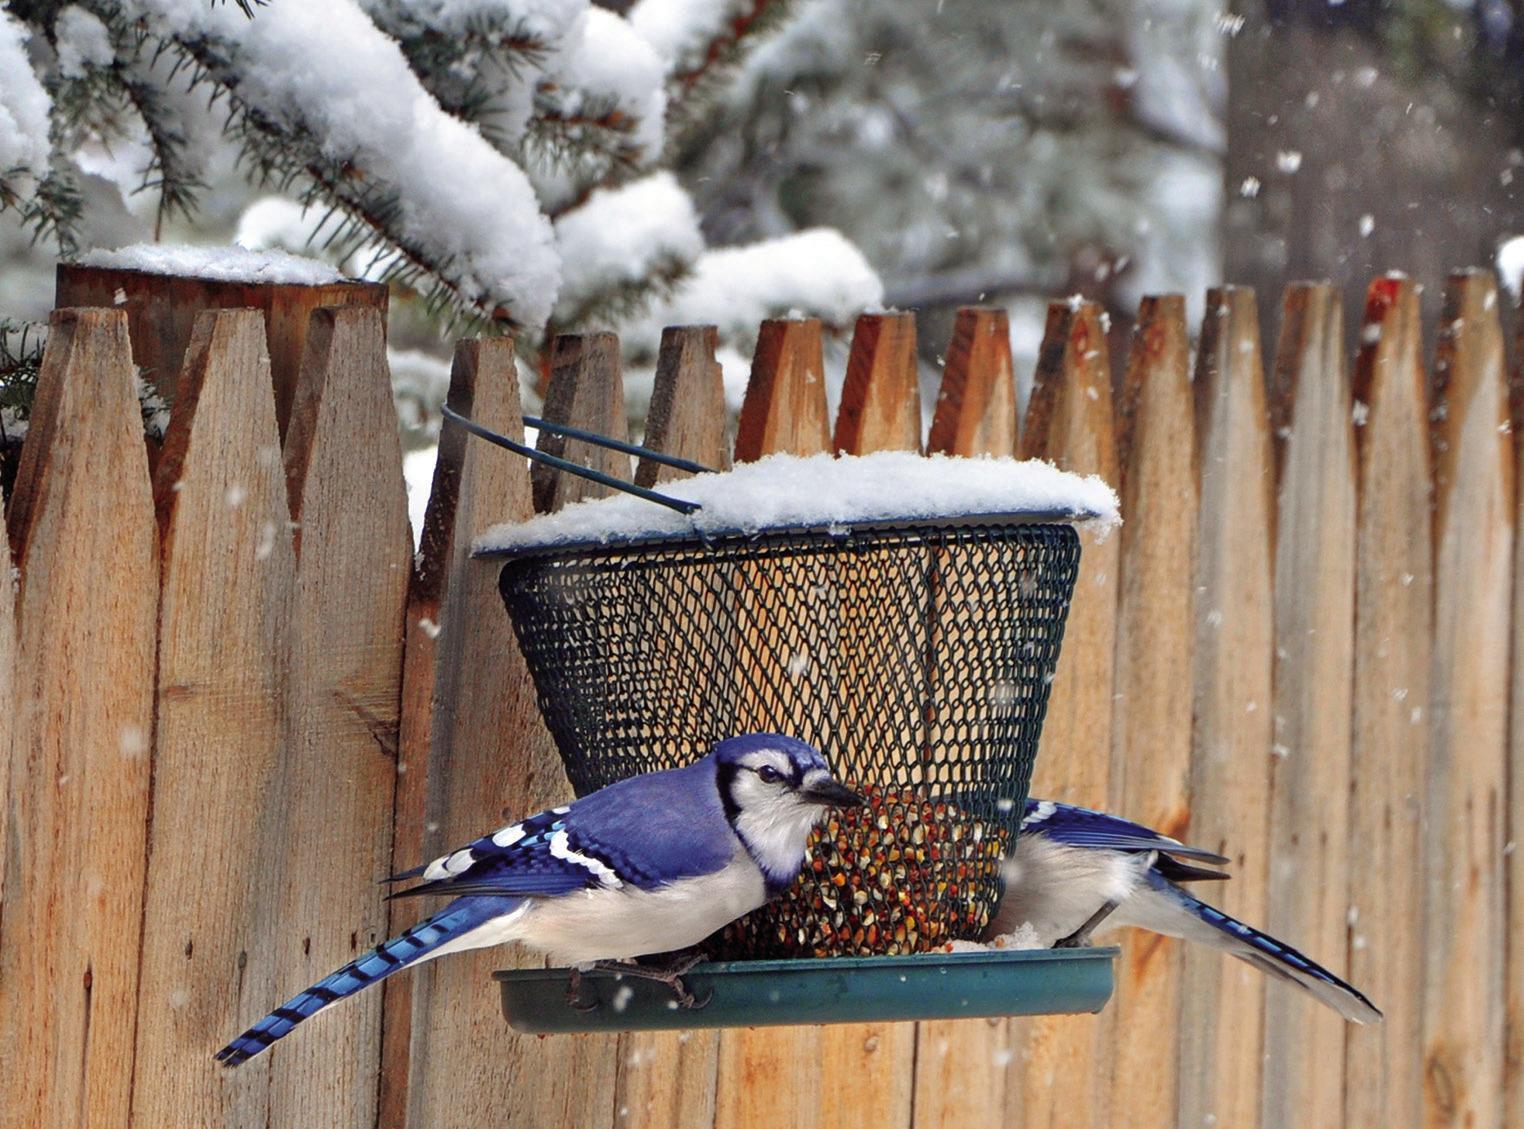 Exploring Nature: Birds in Winter